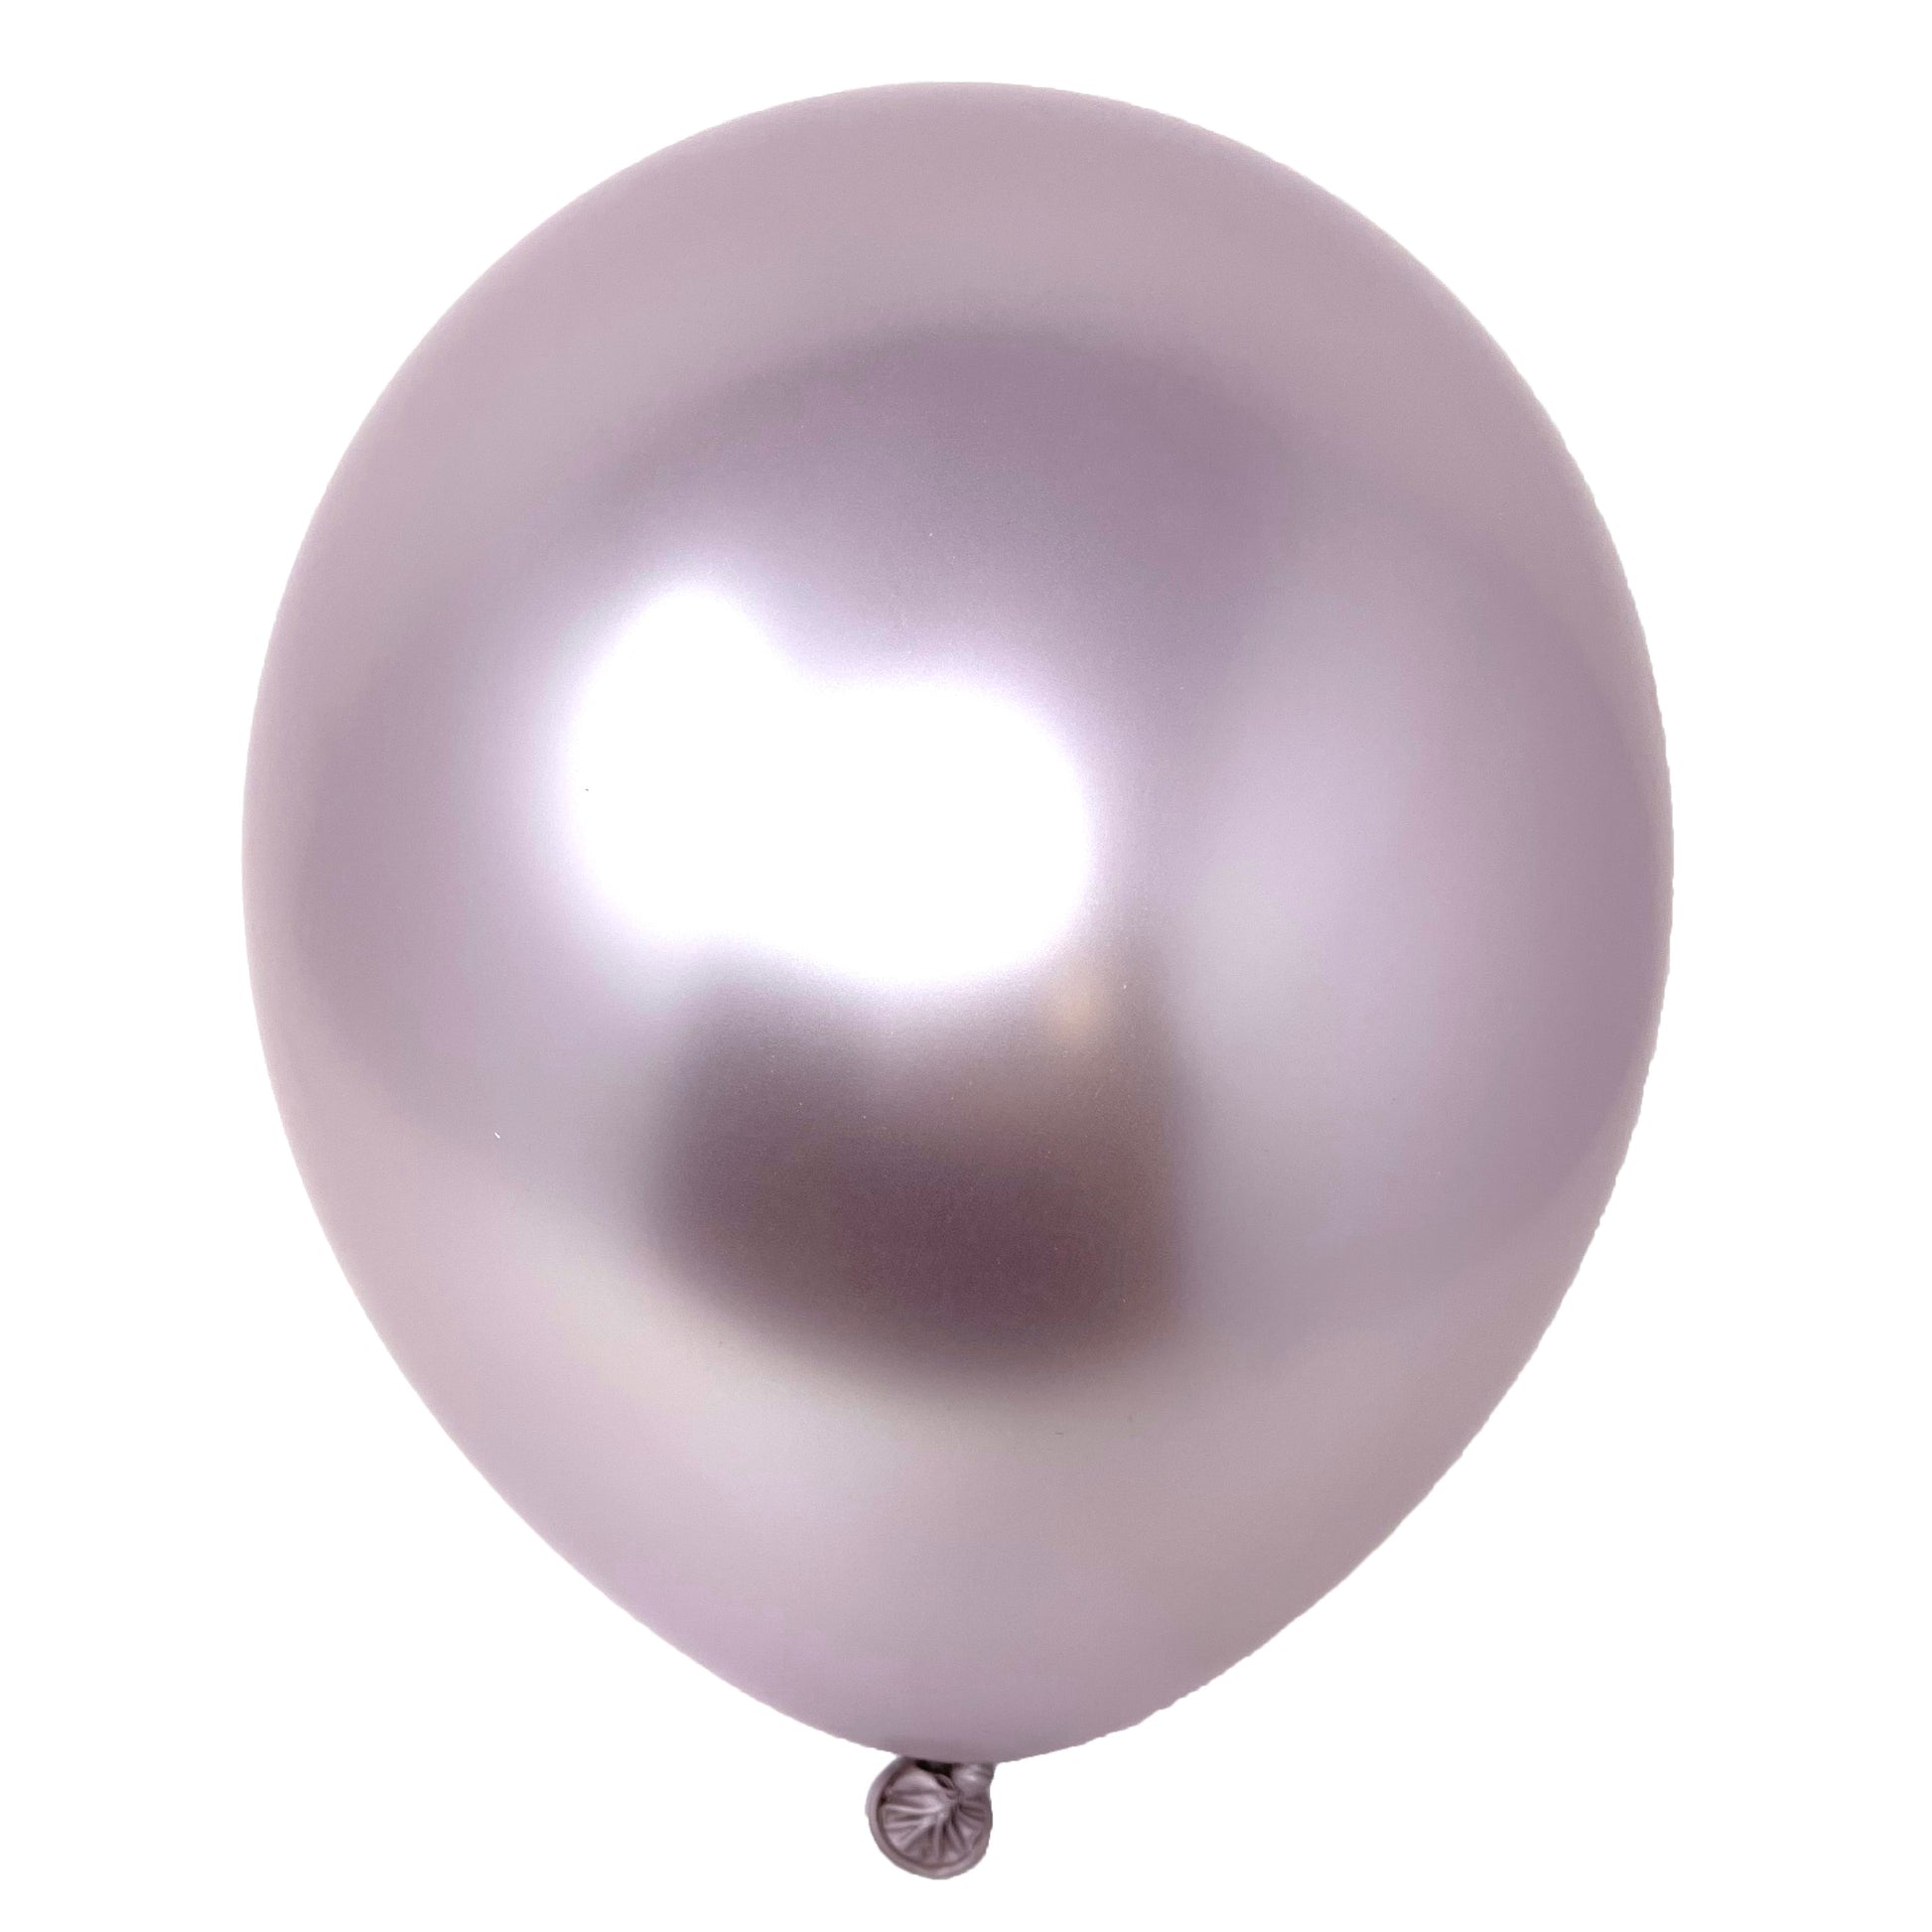 Lot de 50 ballons colorés en métal chromé de 30,5 cm. Les ballons colorés  en latex double couche sont plus durables et colorés, adaptés pour un